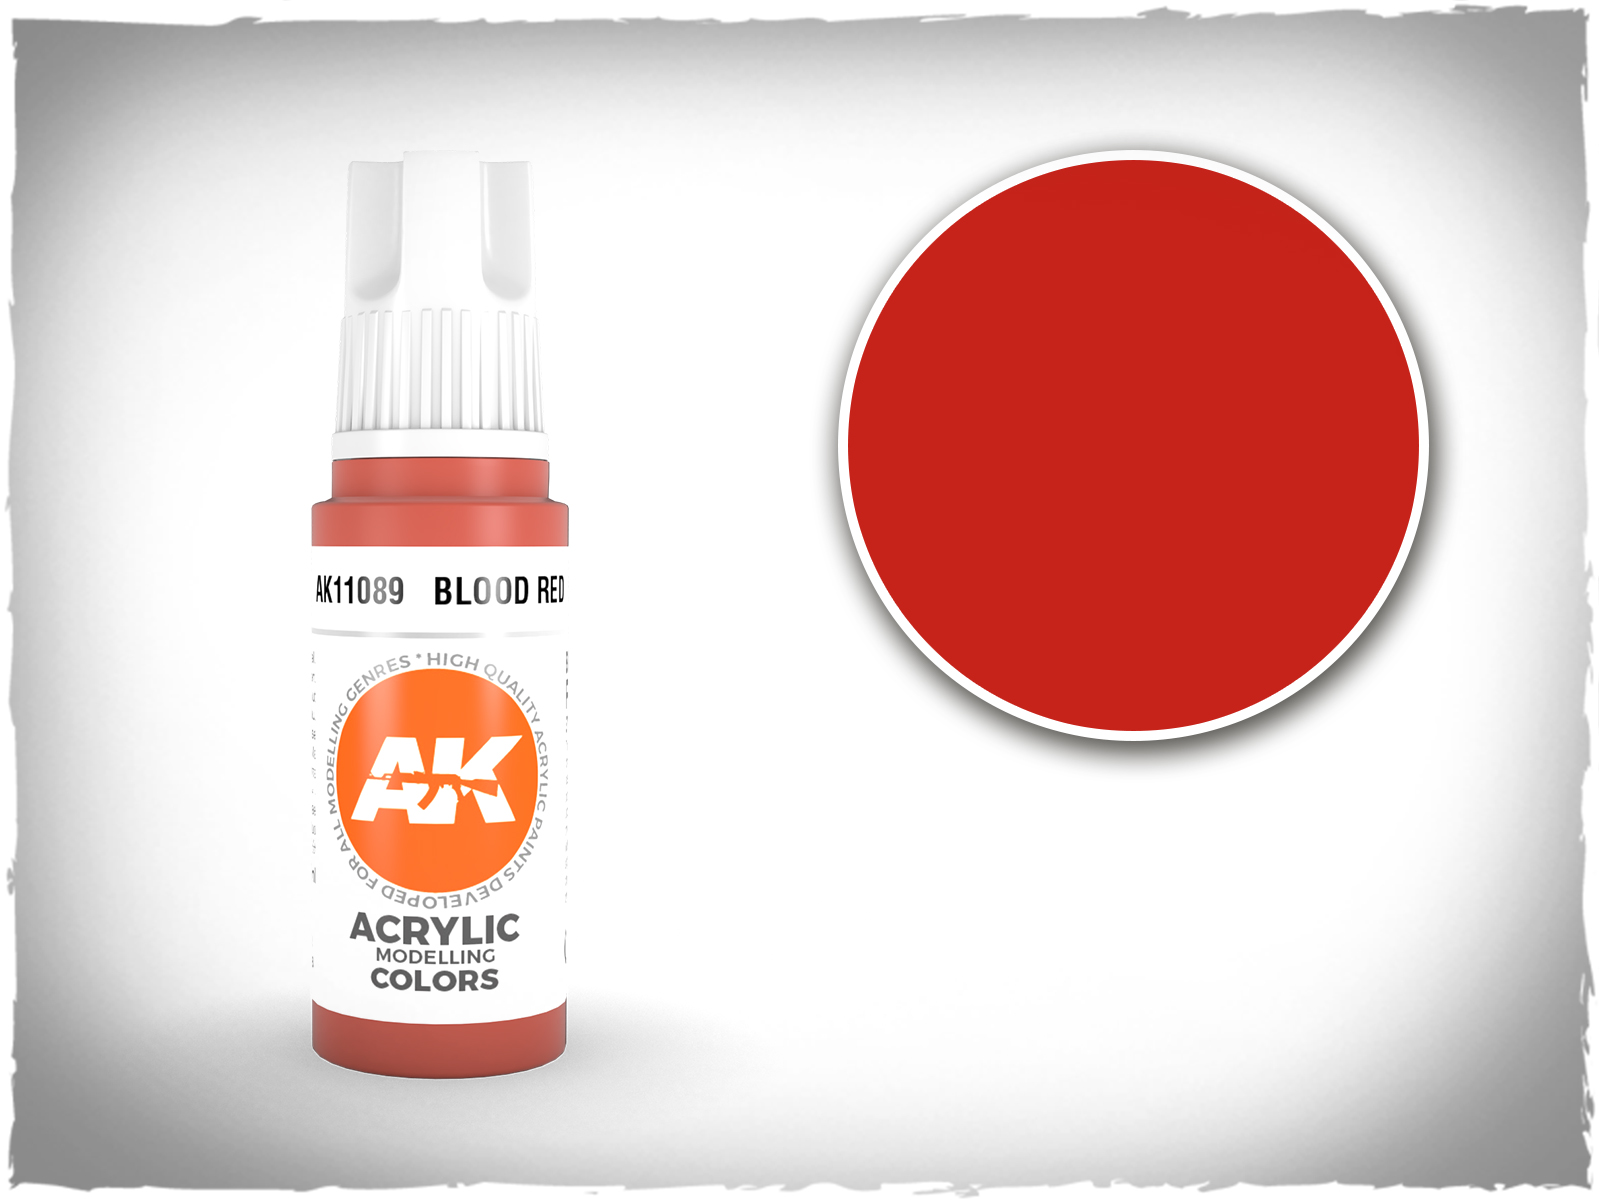 AK acrylic colors 3rd gen - AK11089 - Blood Red | DeepCut Studio